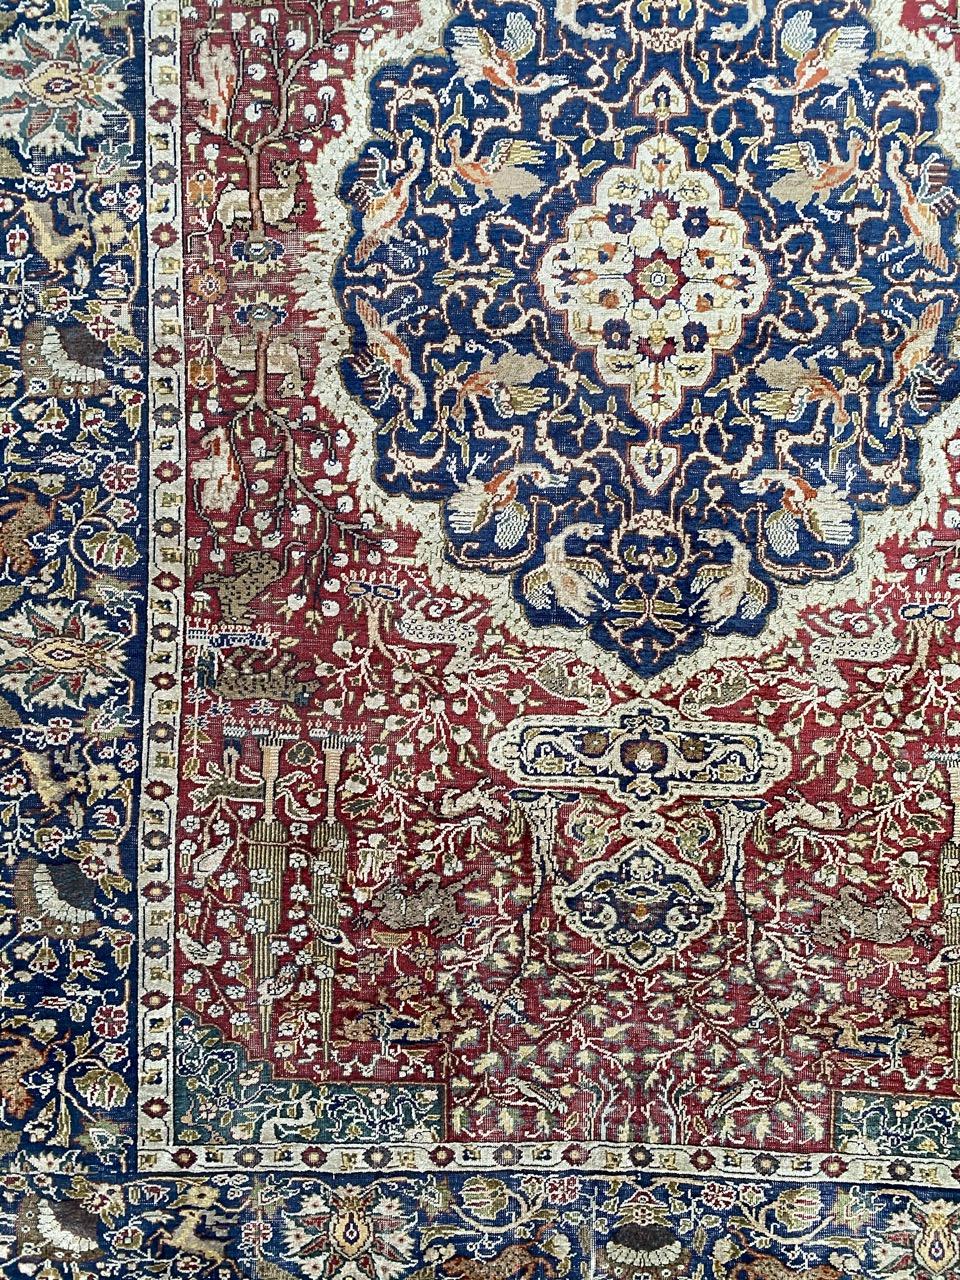 Wunderschöner türkischer Seidenteppich aus dem frühen 20. Jahrhundert mit schönem Design im Stil des 16. Jahrhunderts und schönen natürlichen Farben, vollständig und fein handgeknüpft mit Seidensamt auf Baumwollgrund.

✨✨✨
